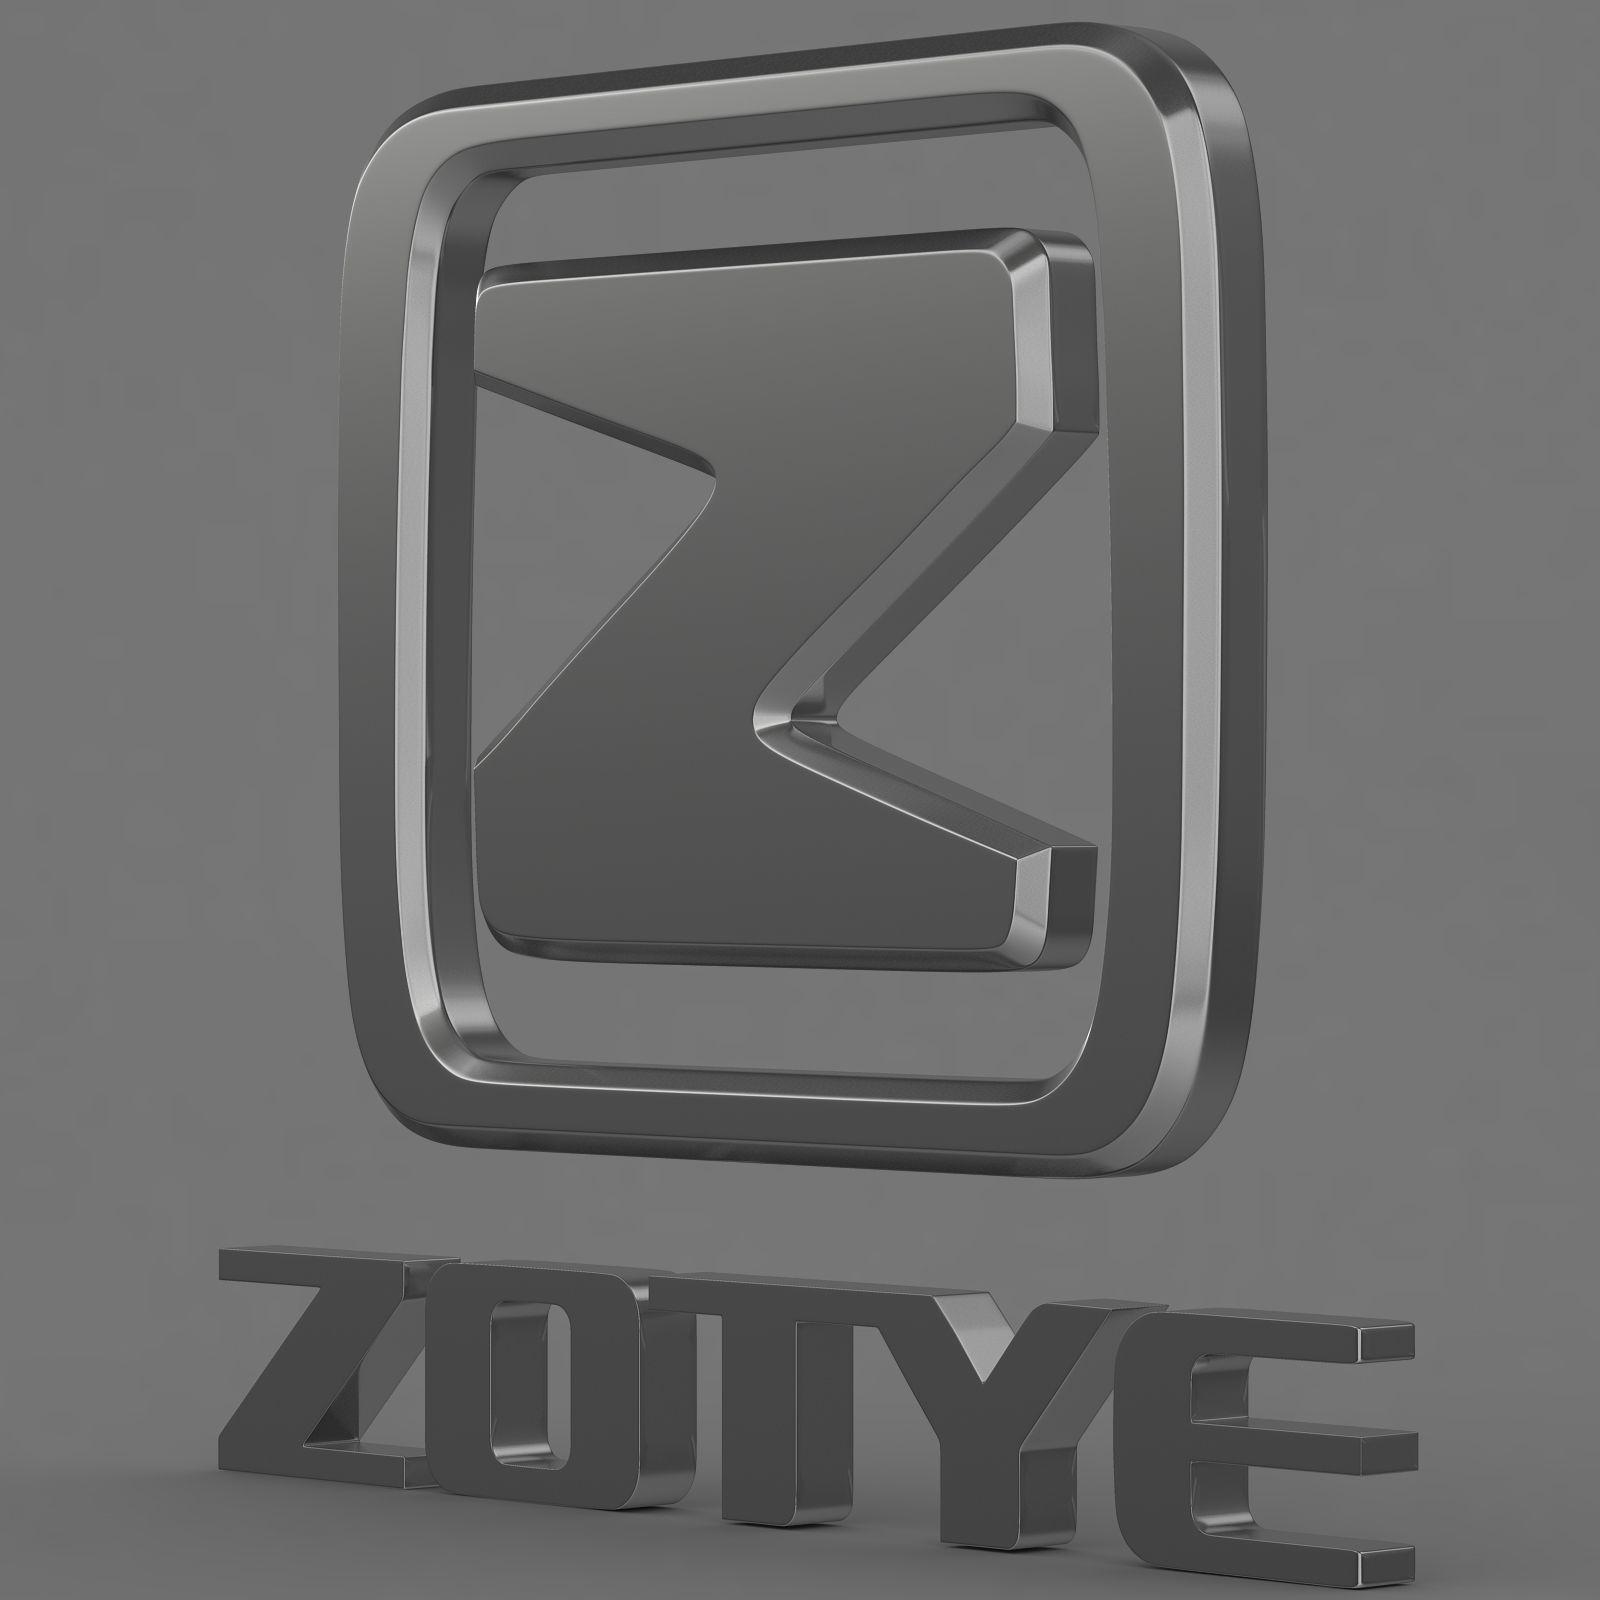 Zotye Logo - Zotye logoD model